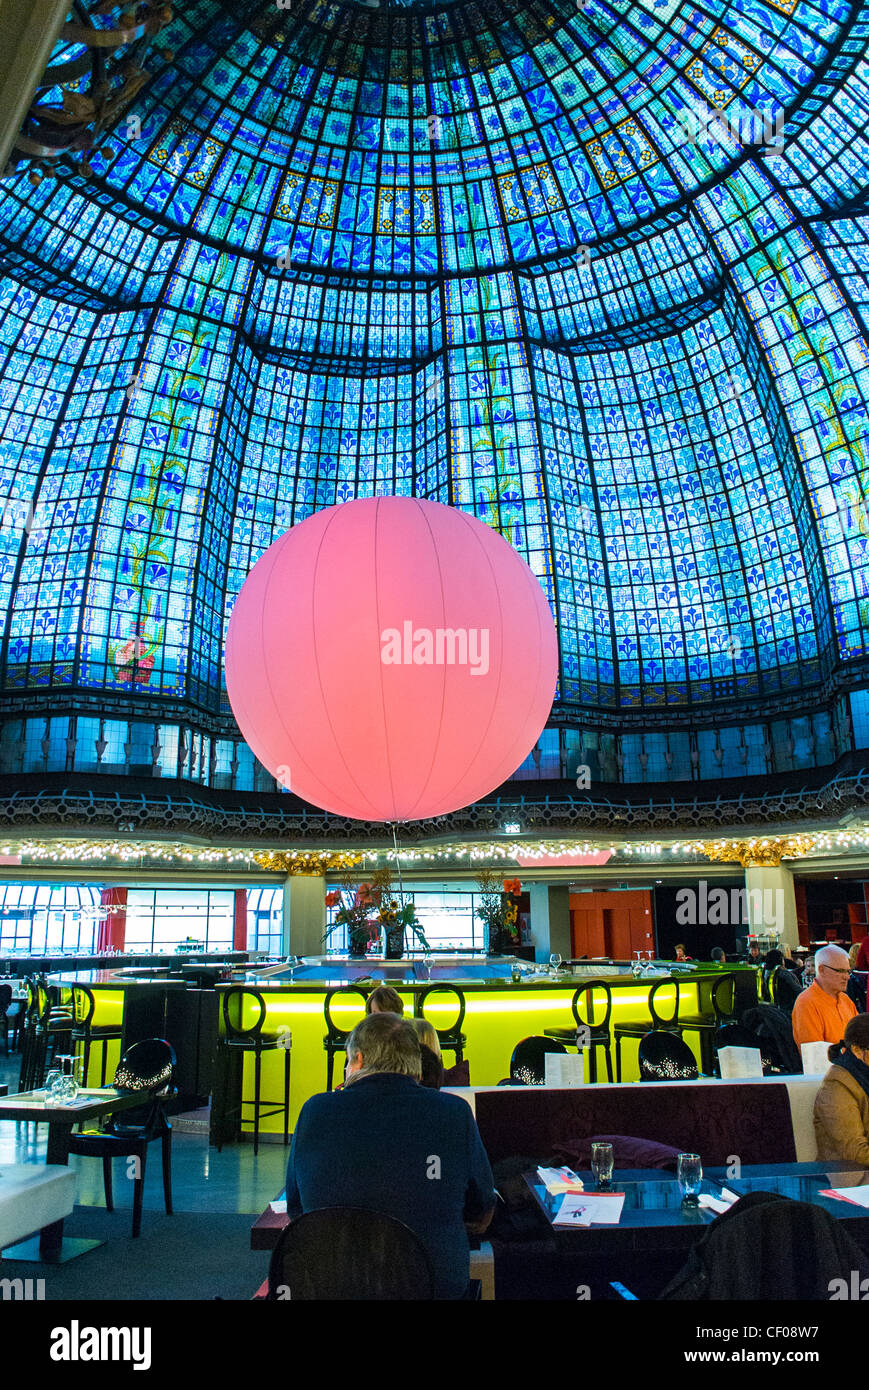 Paris, France, les gens partagent leurs repas au restaurant Bistro contemporain français, en haut du grand magasin Printemps, design intérieur contemporain Banque D'Images